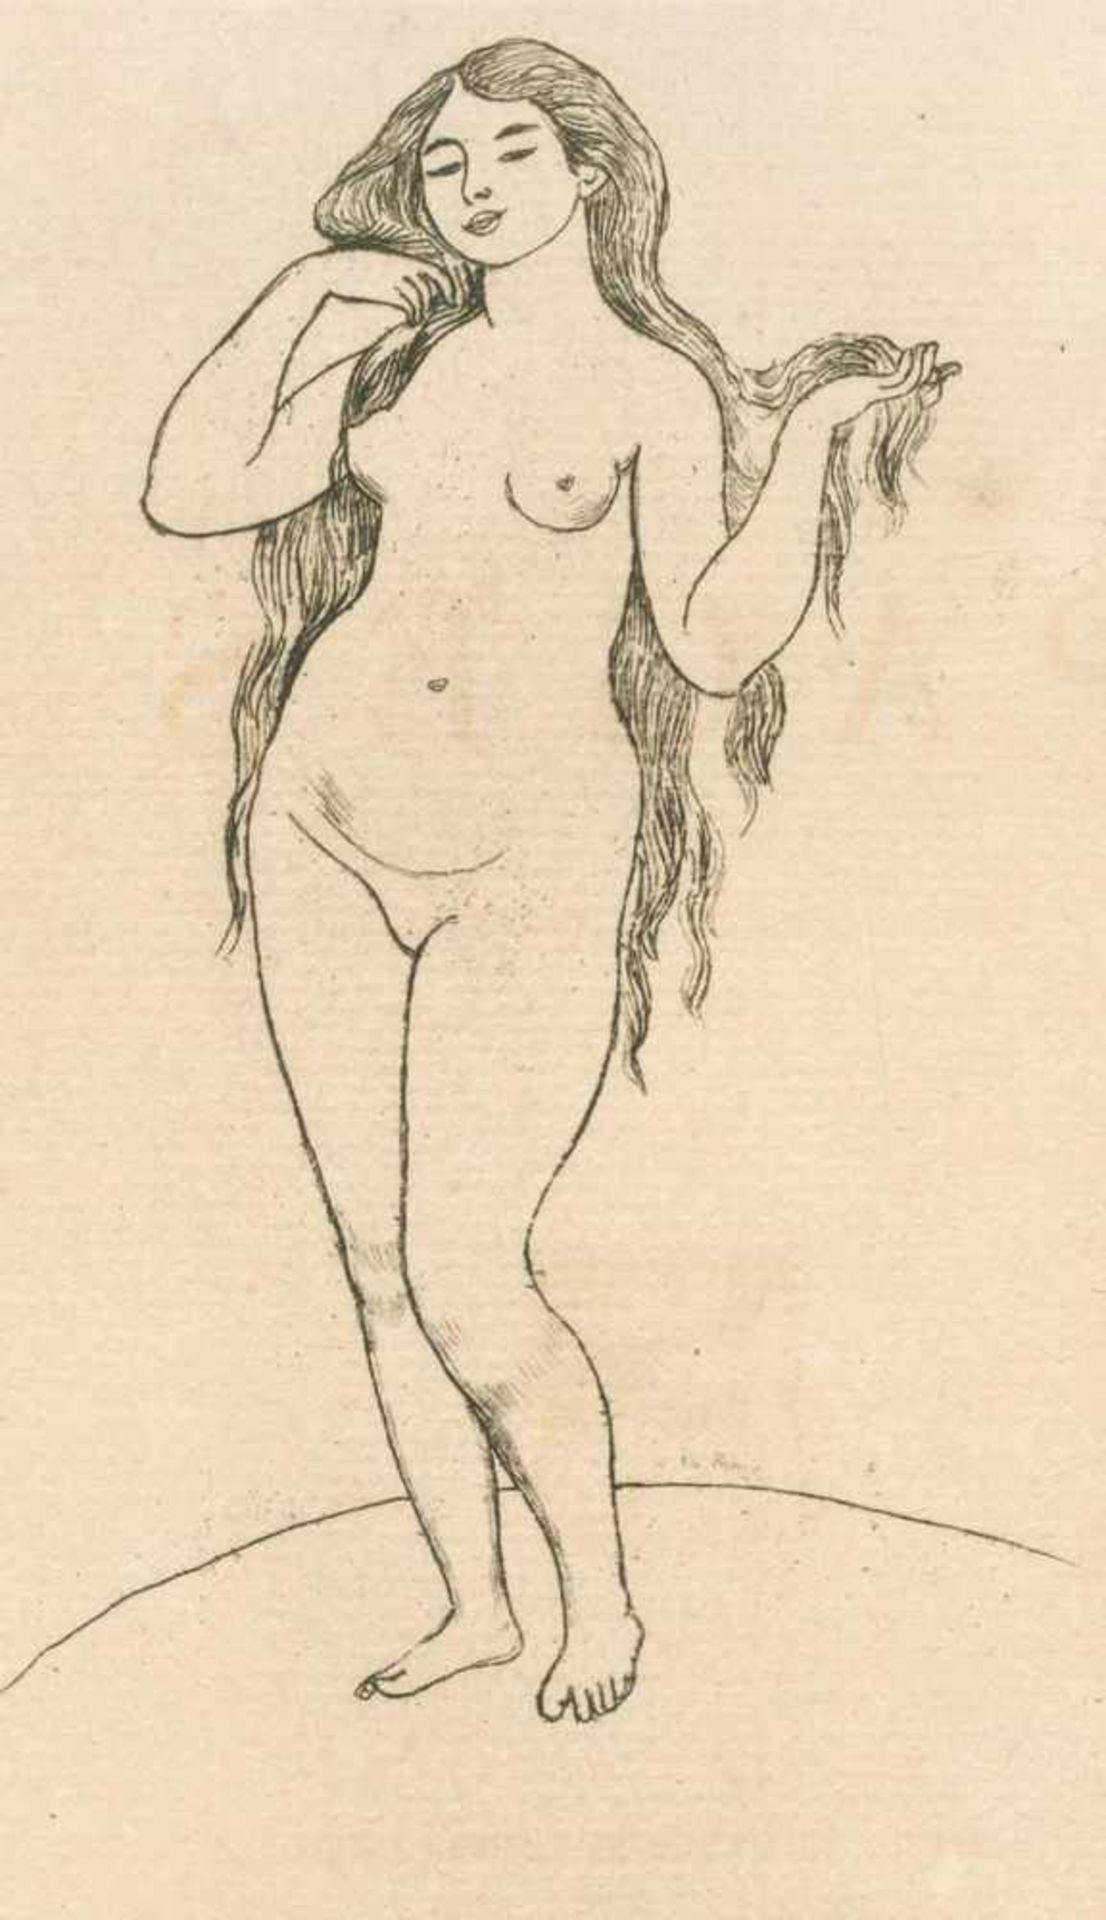 Mellarme,S.Pages. Brüssel, Deman 1891. 4°. Mit 1 Orig.-Radierung v. Auguste Renoir. 192 S. Spät